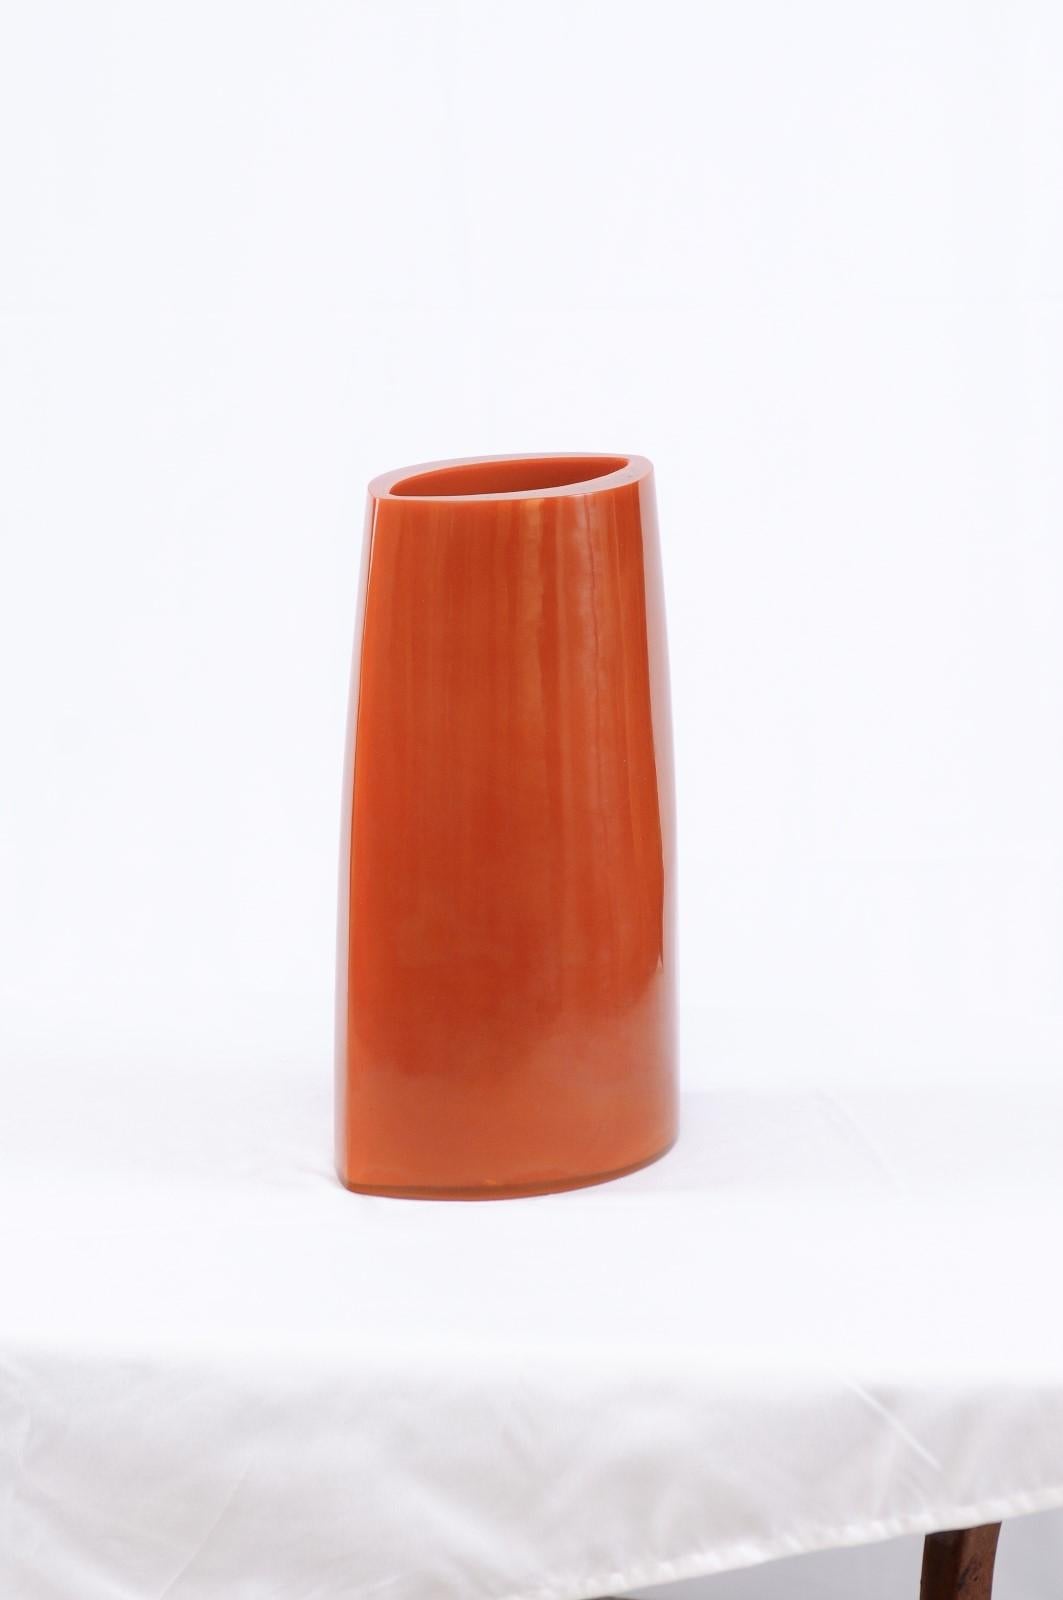 A beautiful bright orange Peking glass vase by Robert Kuo, 13.7